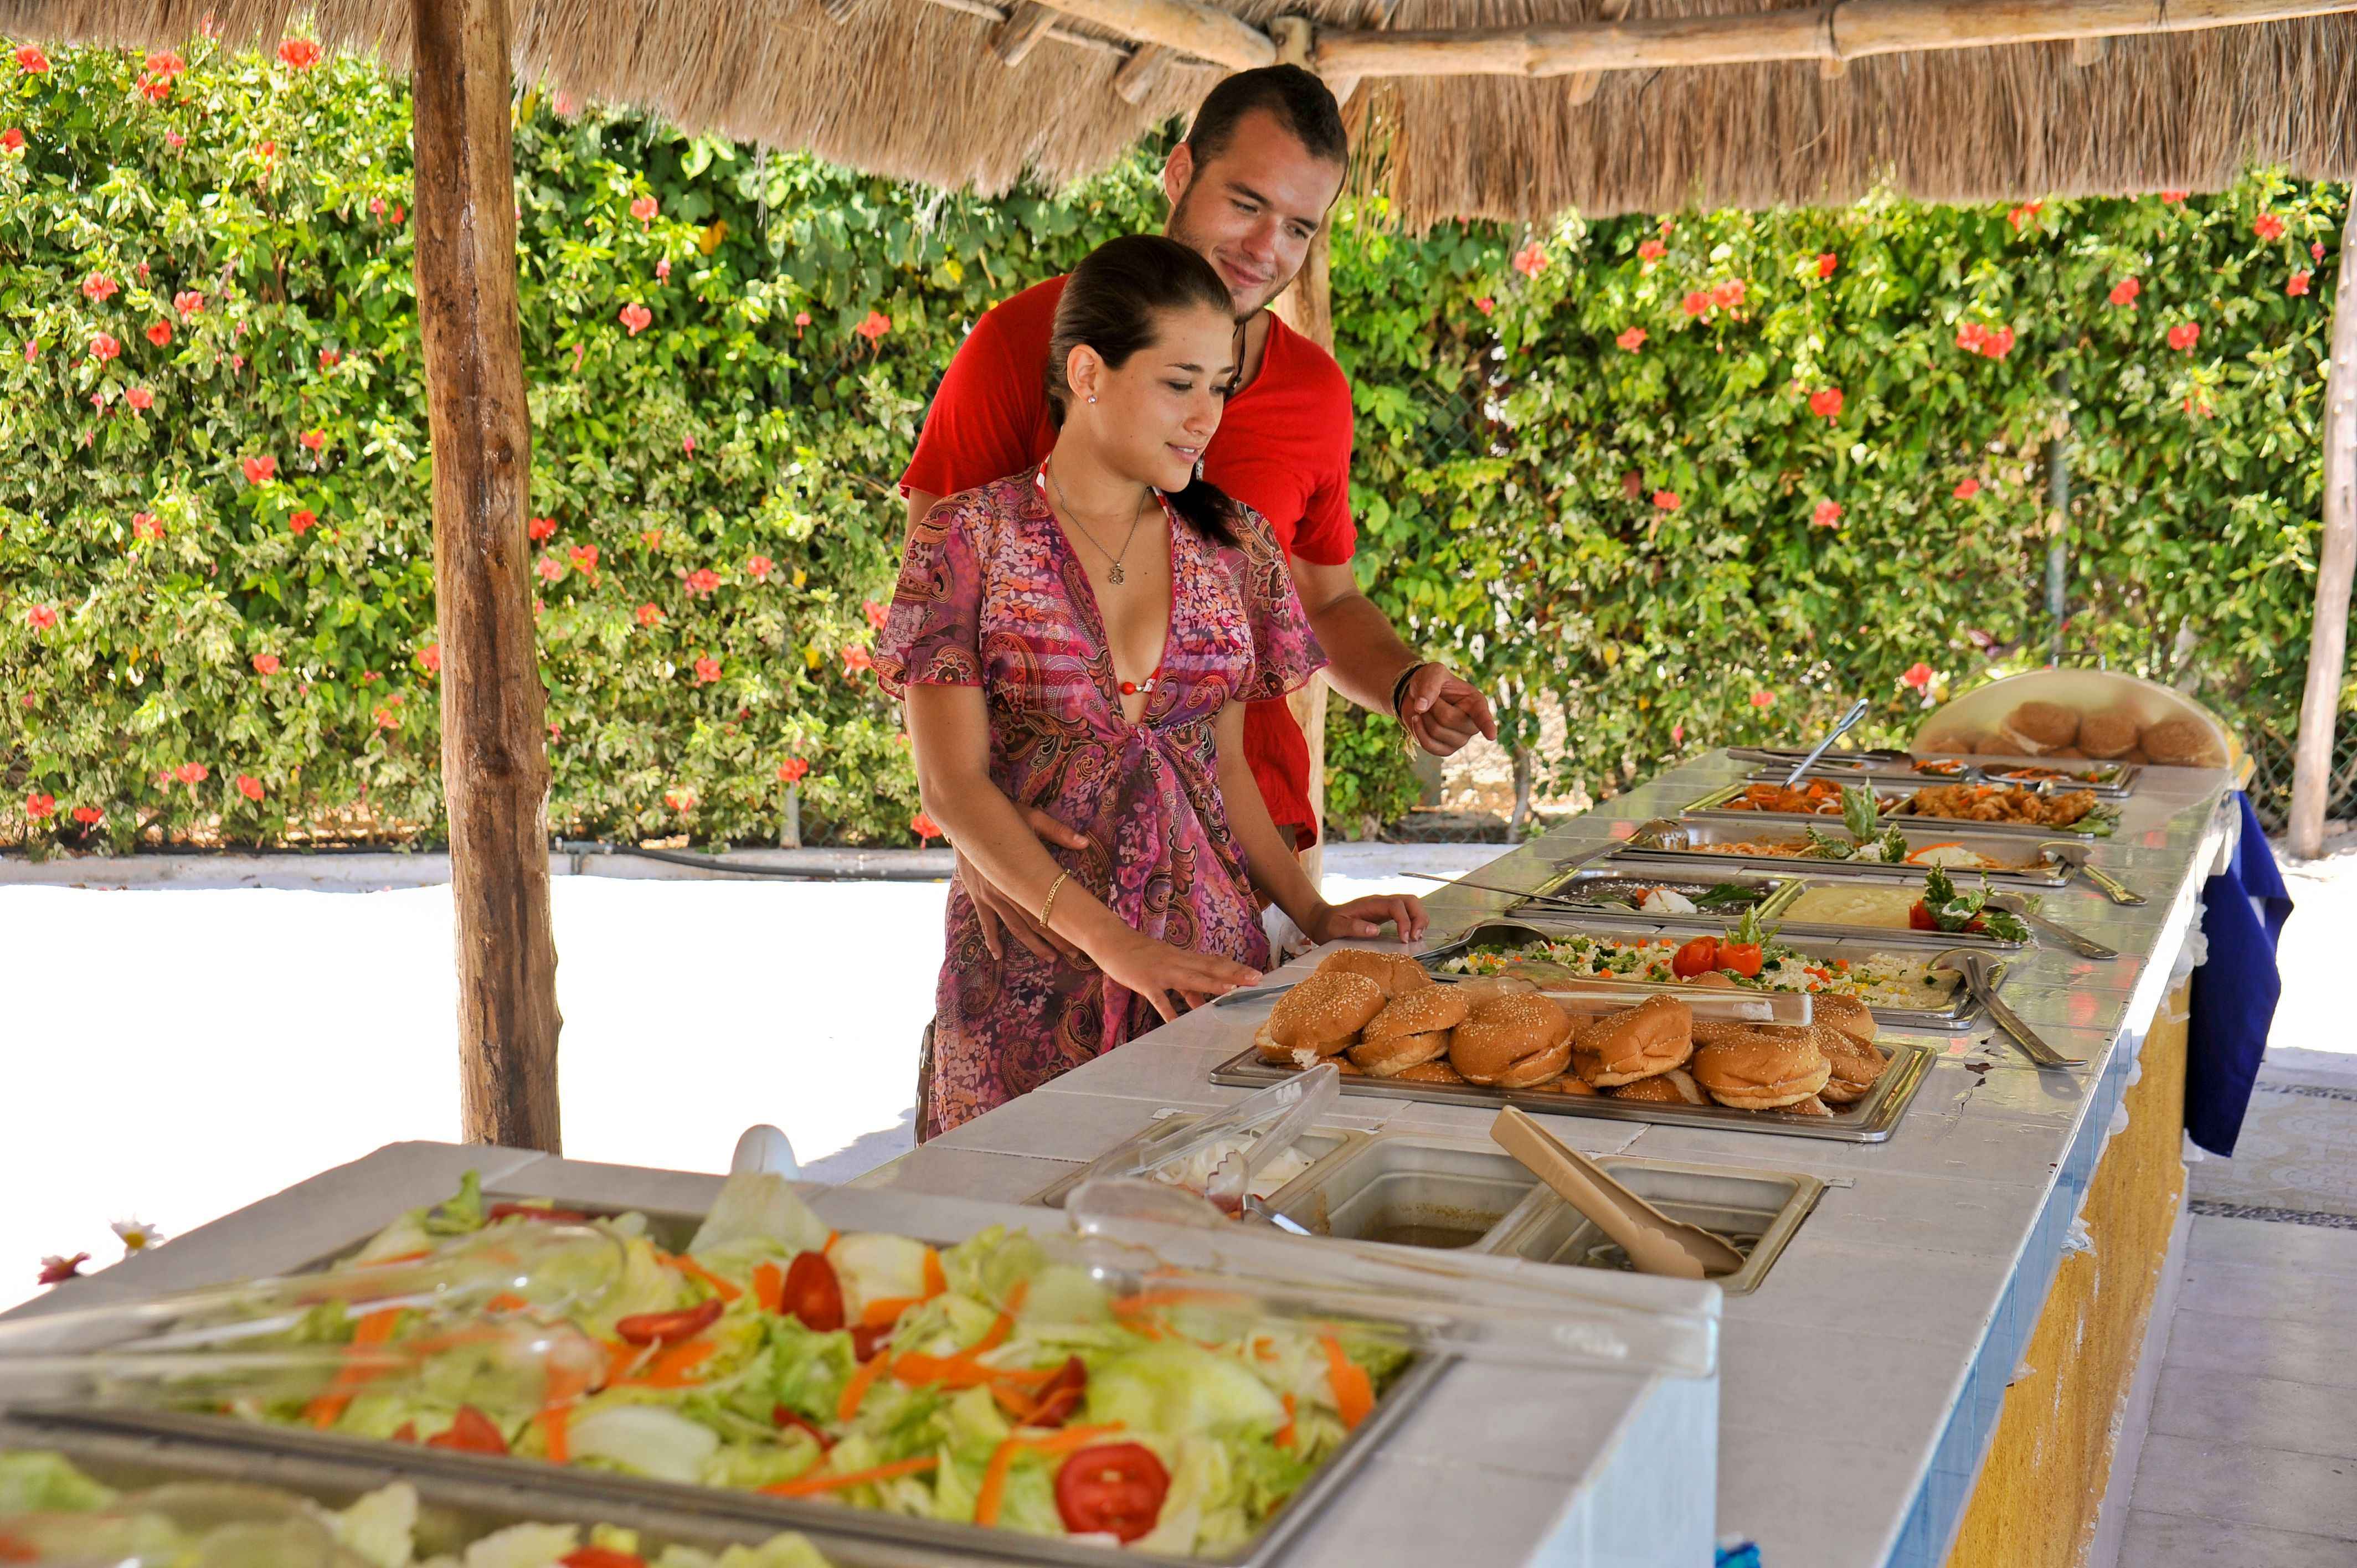 México Travel Solutions Isla Mujeres Catamaran Full Experience 